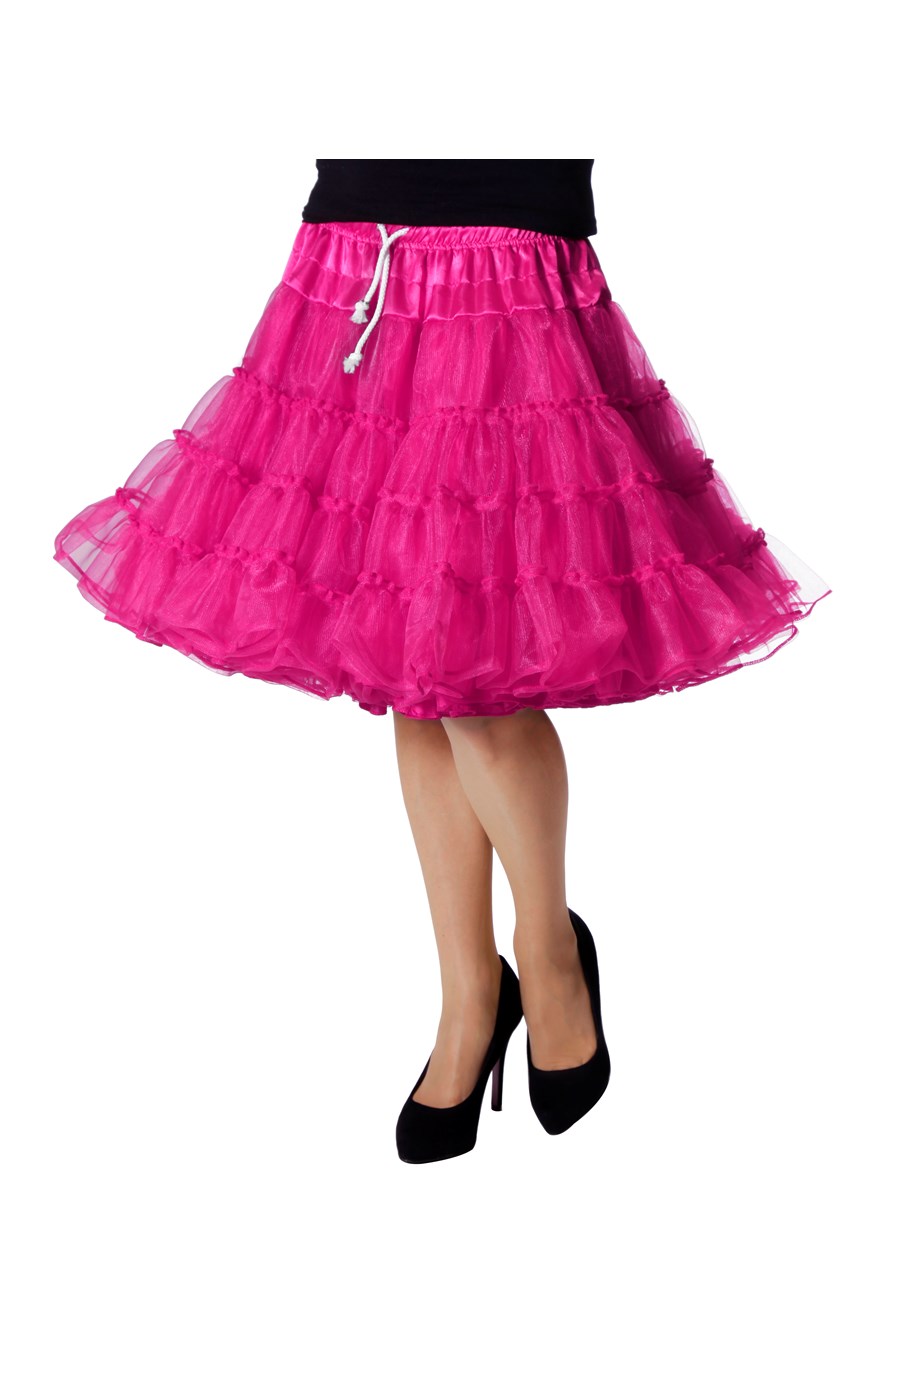 Pat Meter ze Petticoat luxe pink carnavals kleding kopen